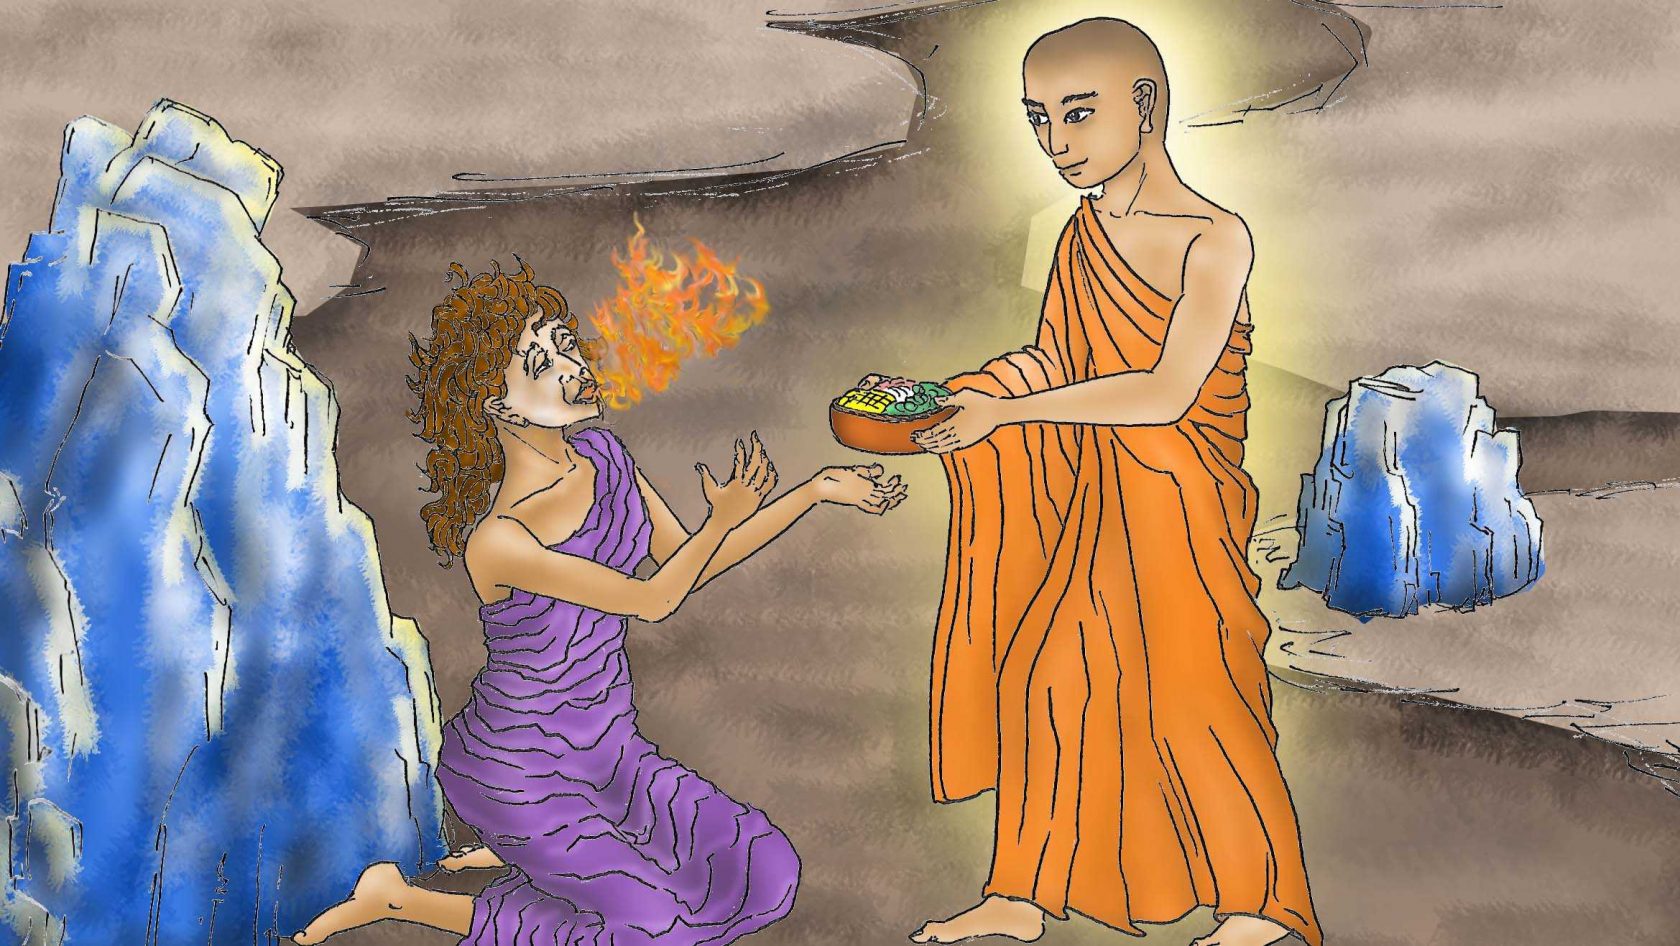 Đại hiếu Mục Kiền Liên cứu mẹ là câu chuyện xúc động thời đức Phật